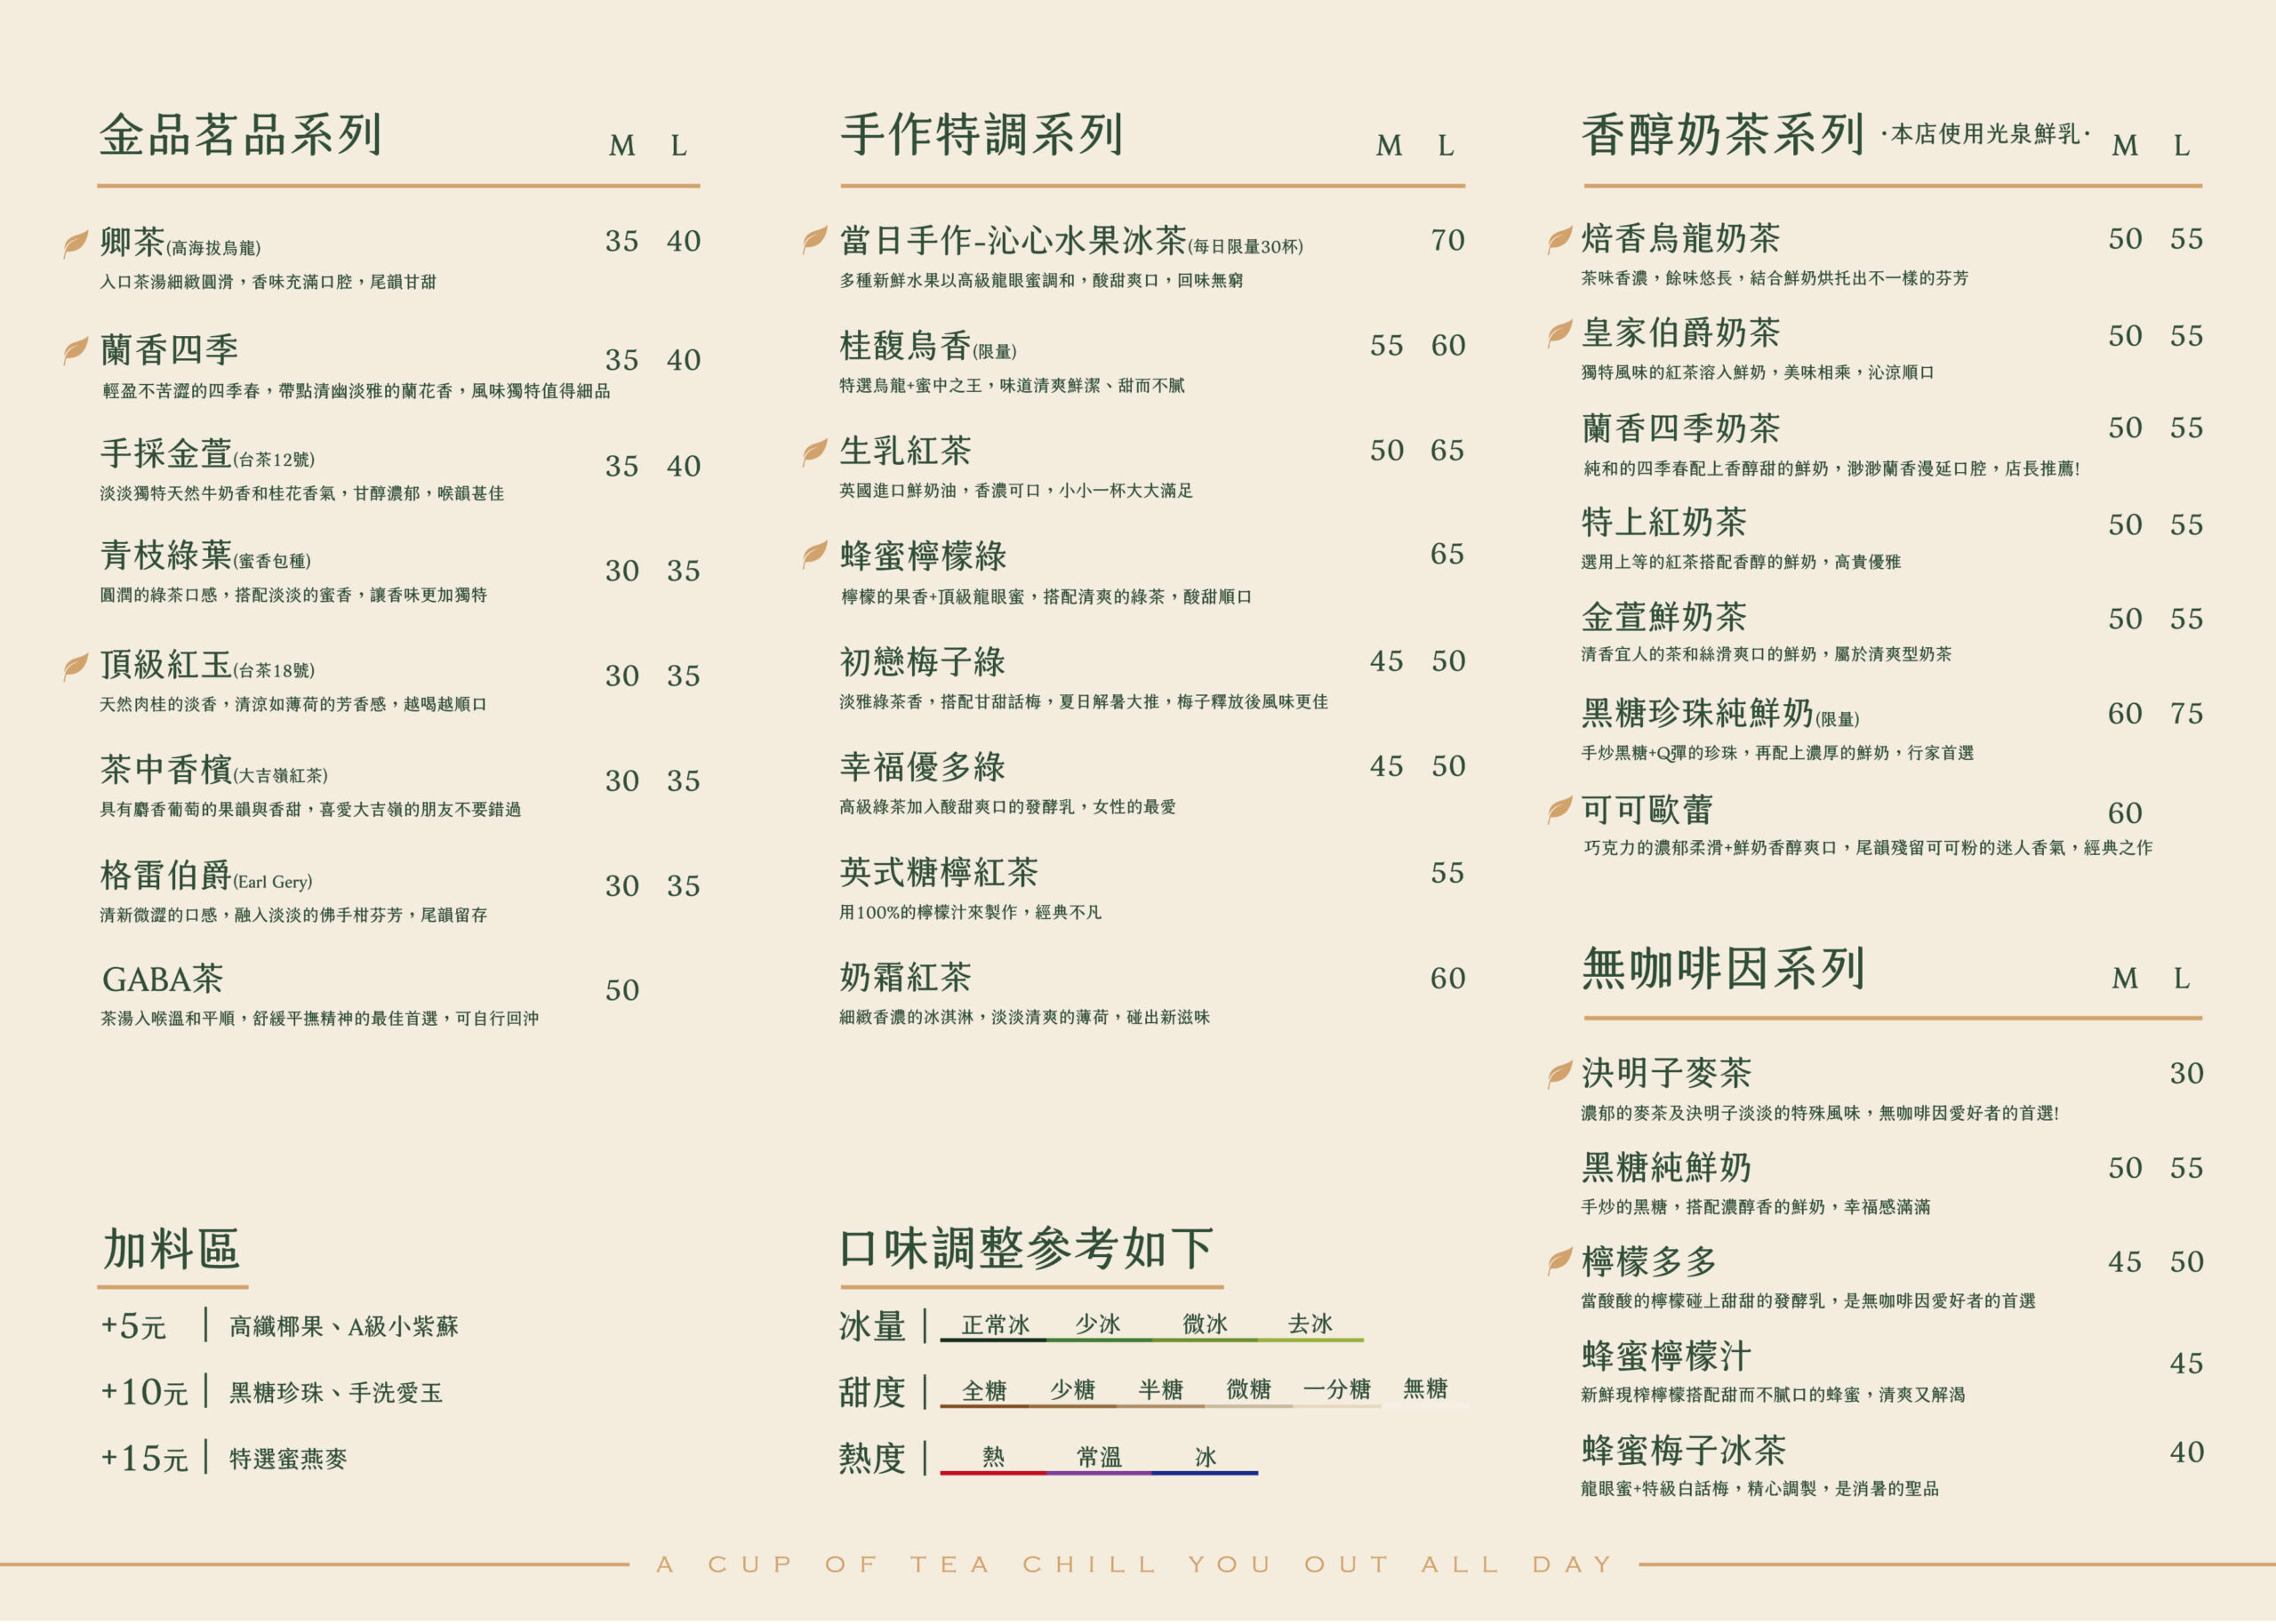 卿茶 菜單 menu